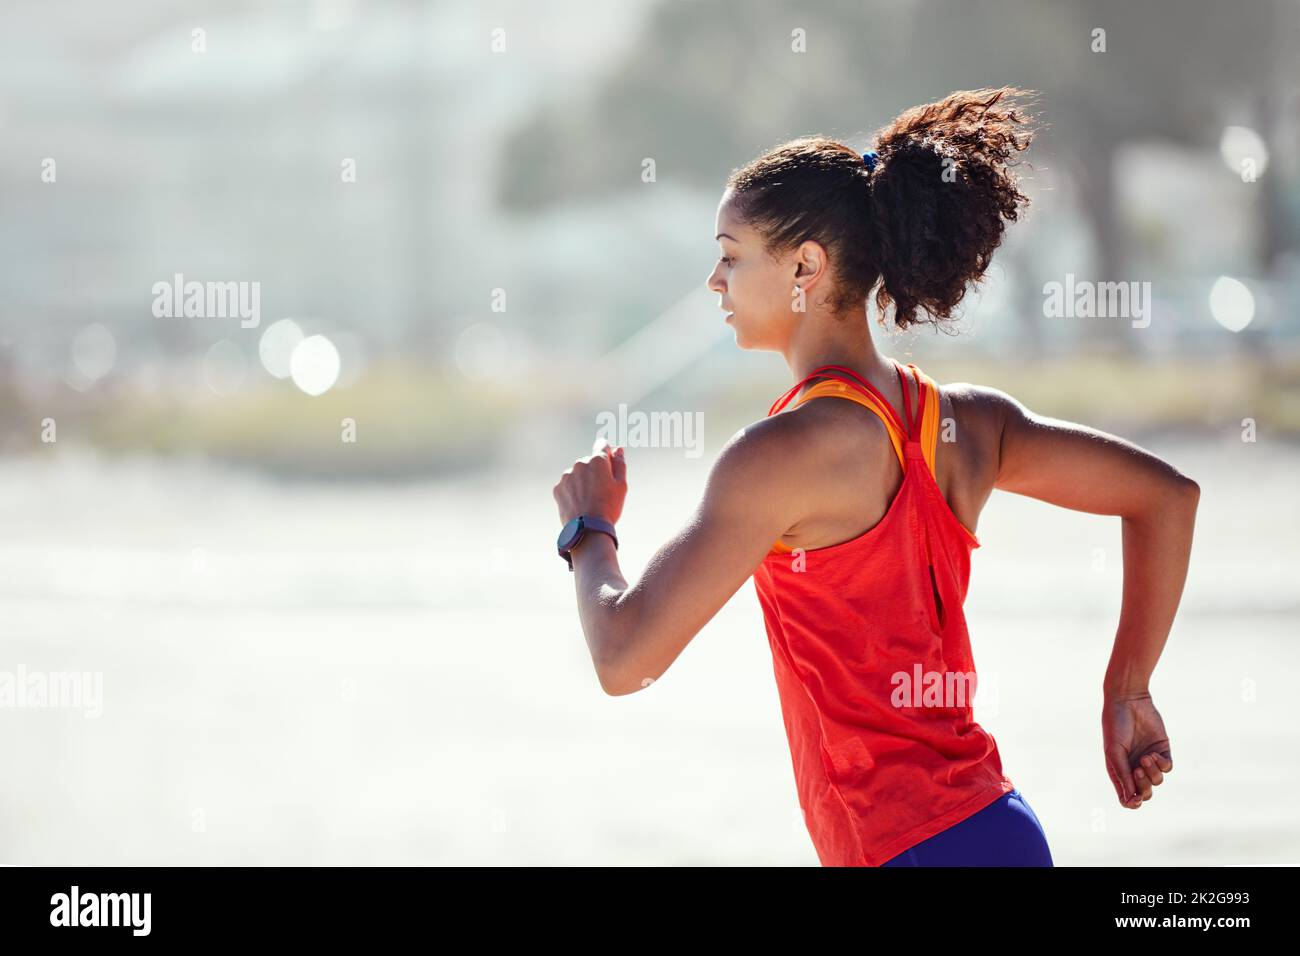 Ne rêvez pas de gagner, entraînez-vous pour ça. Photo d'une jeune femme sportive sur la plage pour sa course du matin. Banque D'Images